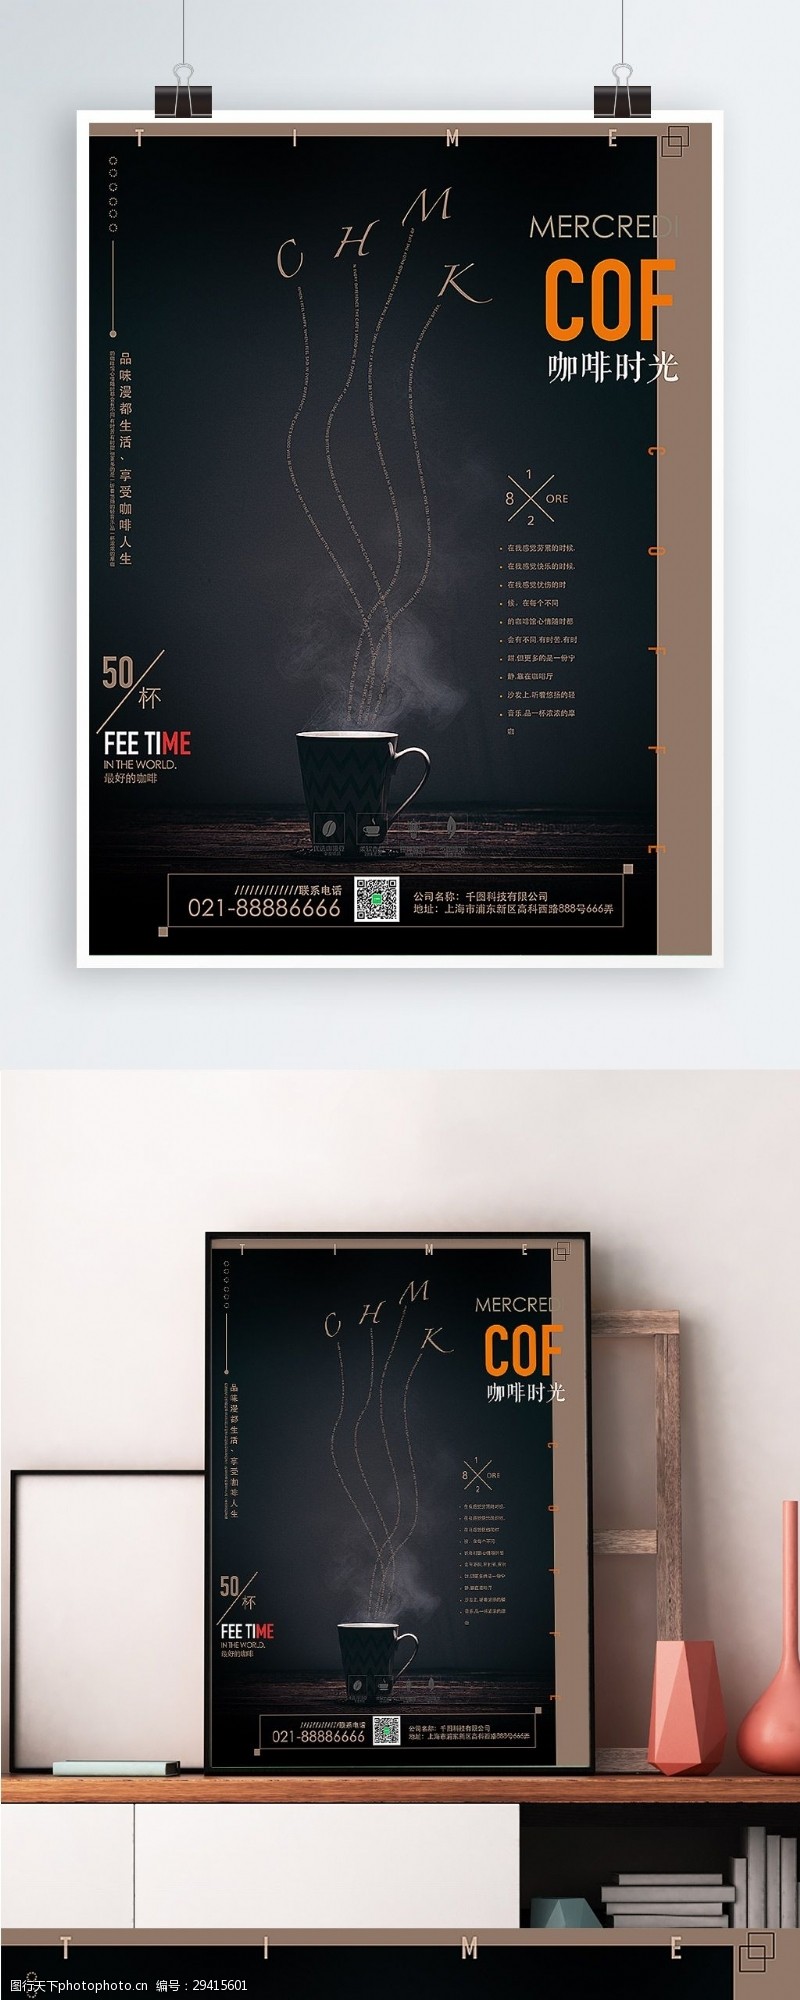 焦糖玛奇朵创意简约咖啡海报设计